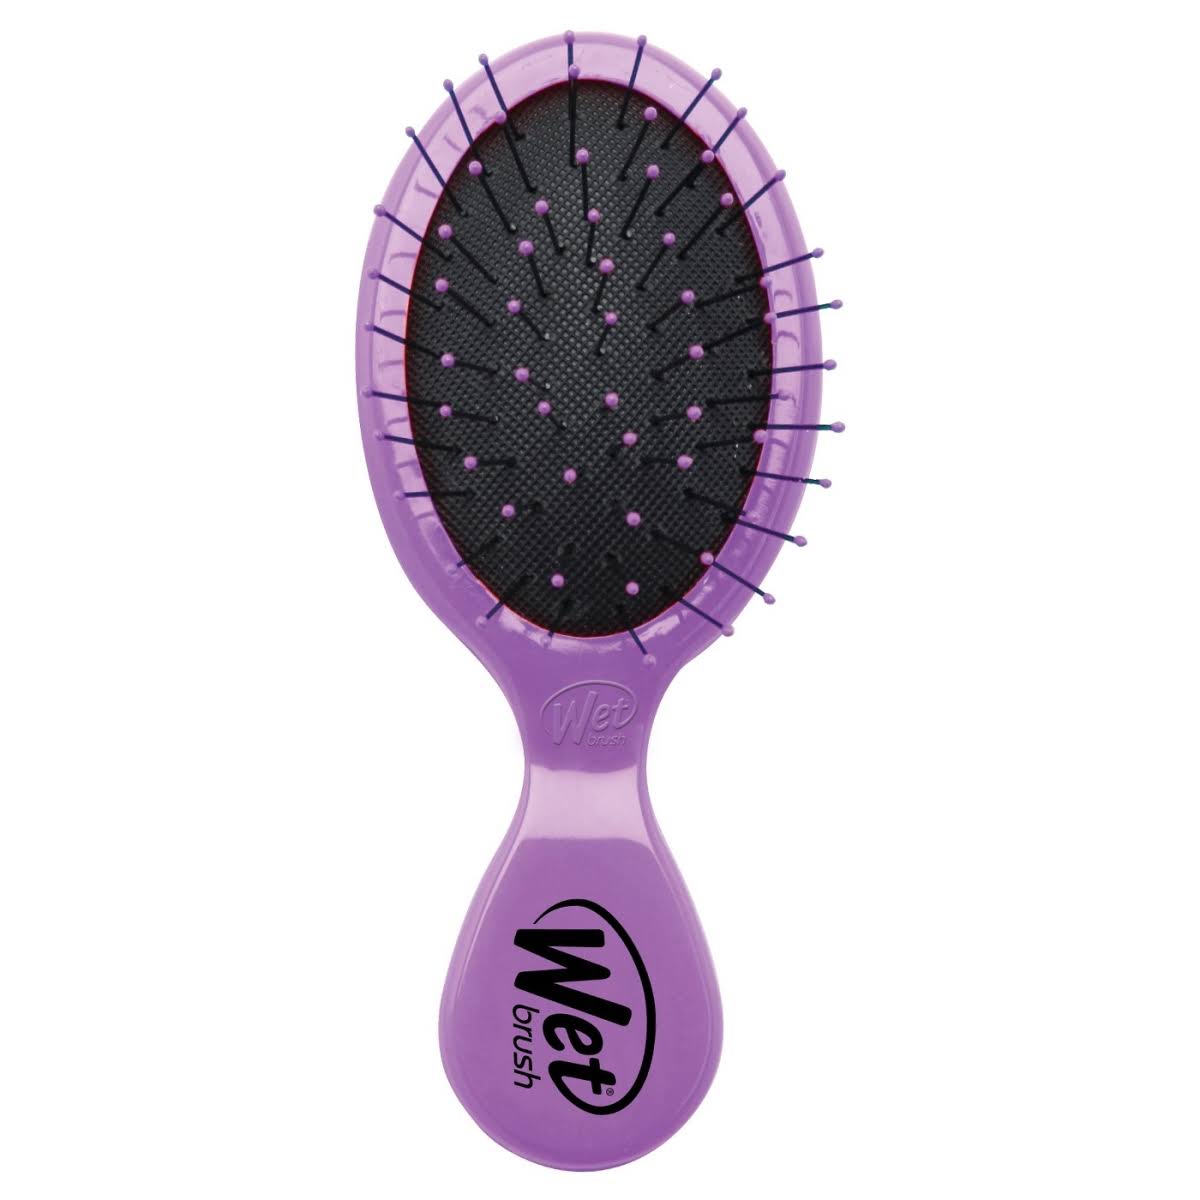 Wet Brush Mini Detangler Squirt, Purple